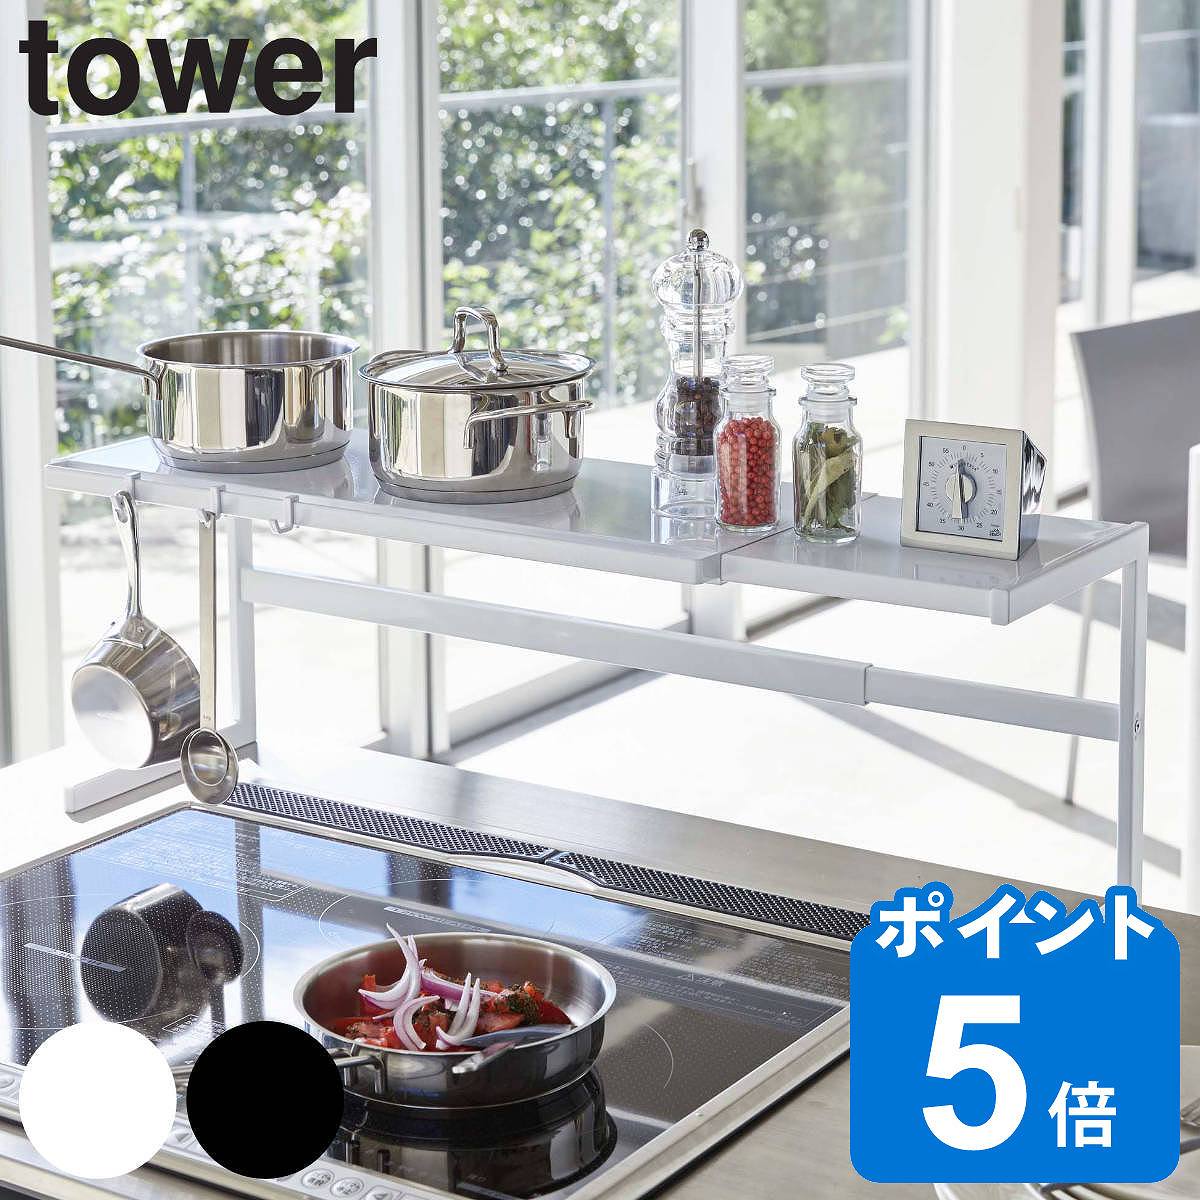 tower 伸縮キッチンサポートラック タワー